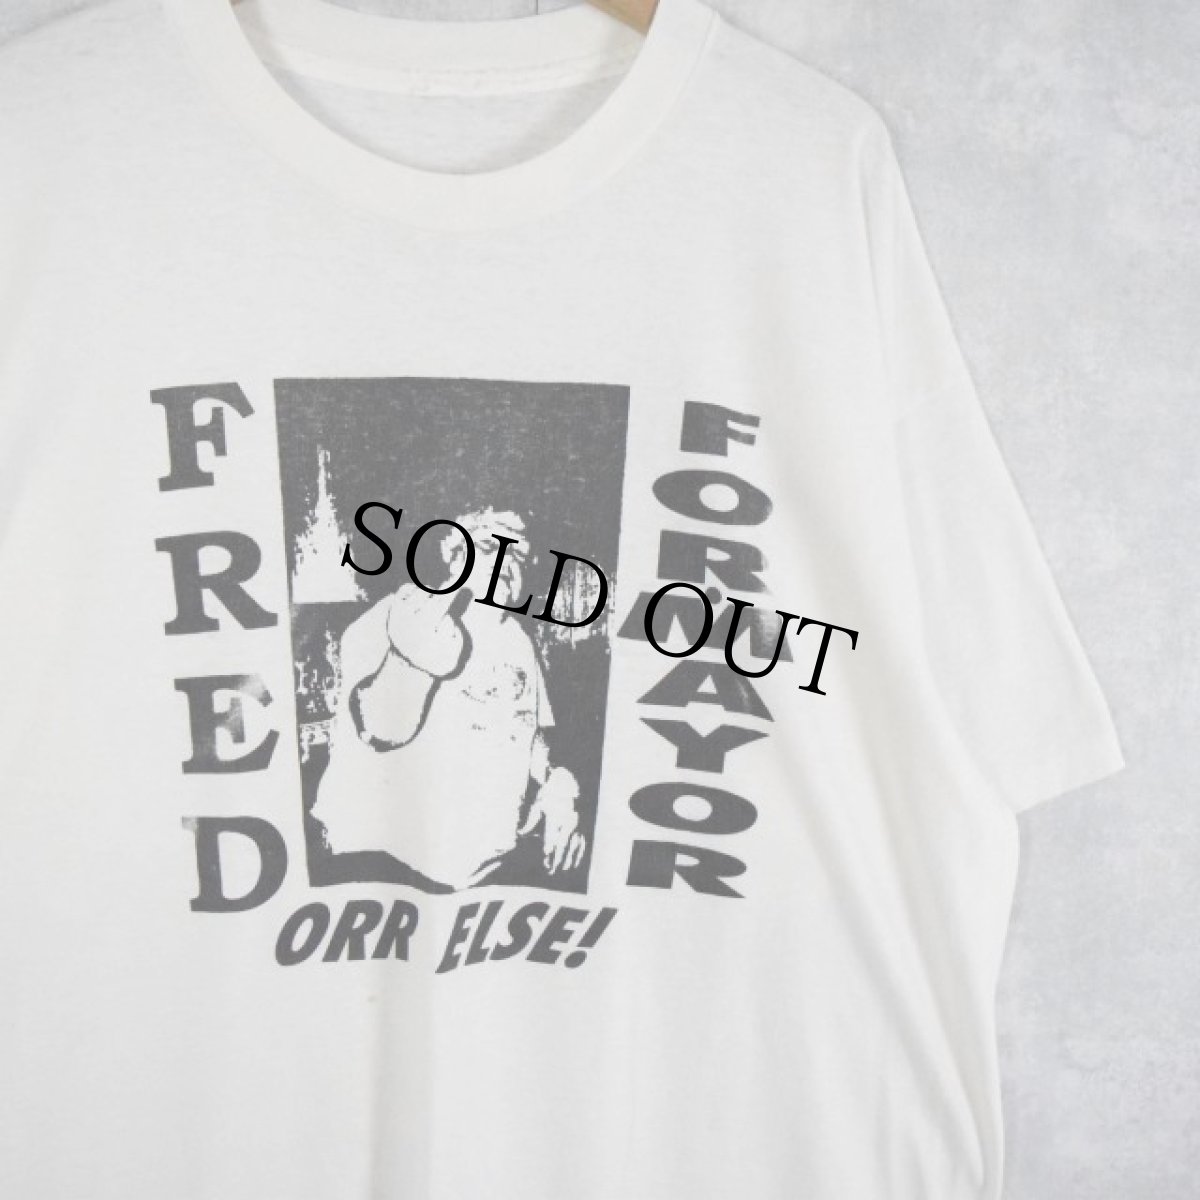 画像1: 90's "FRED FOR MAYOR ORR ELSE!" ファックサインプリントTシャツ (1)